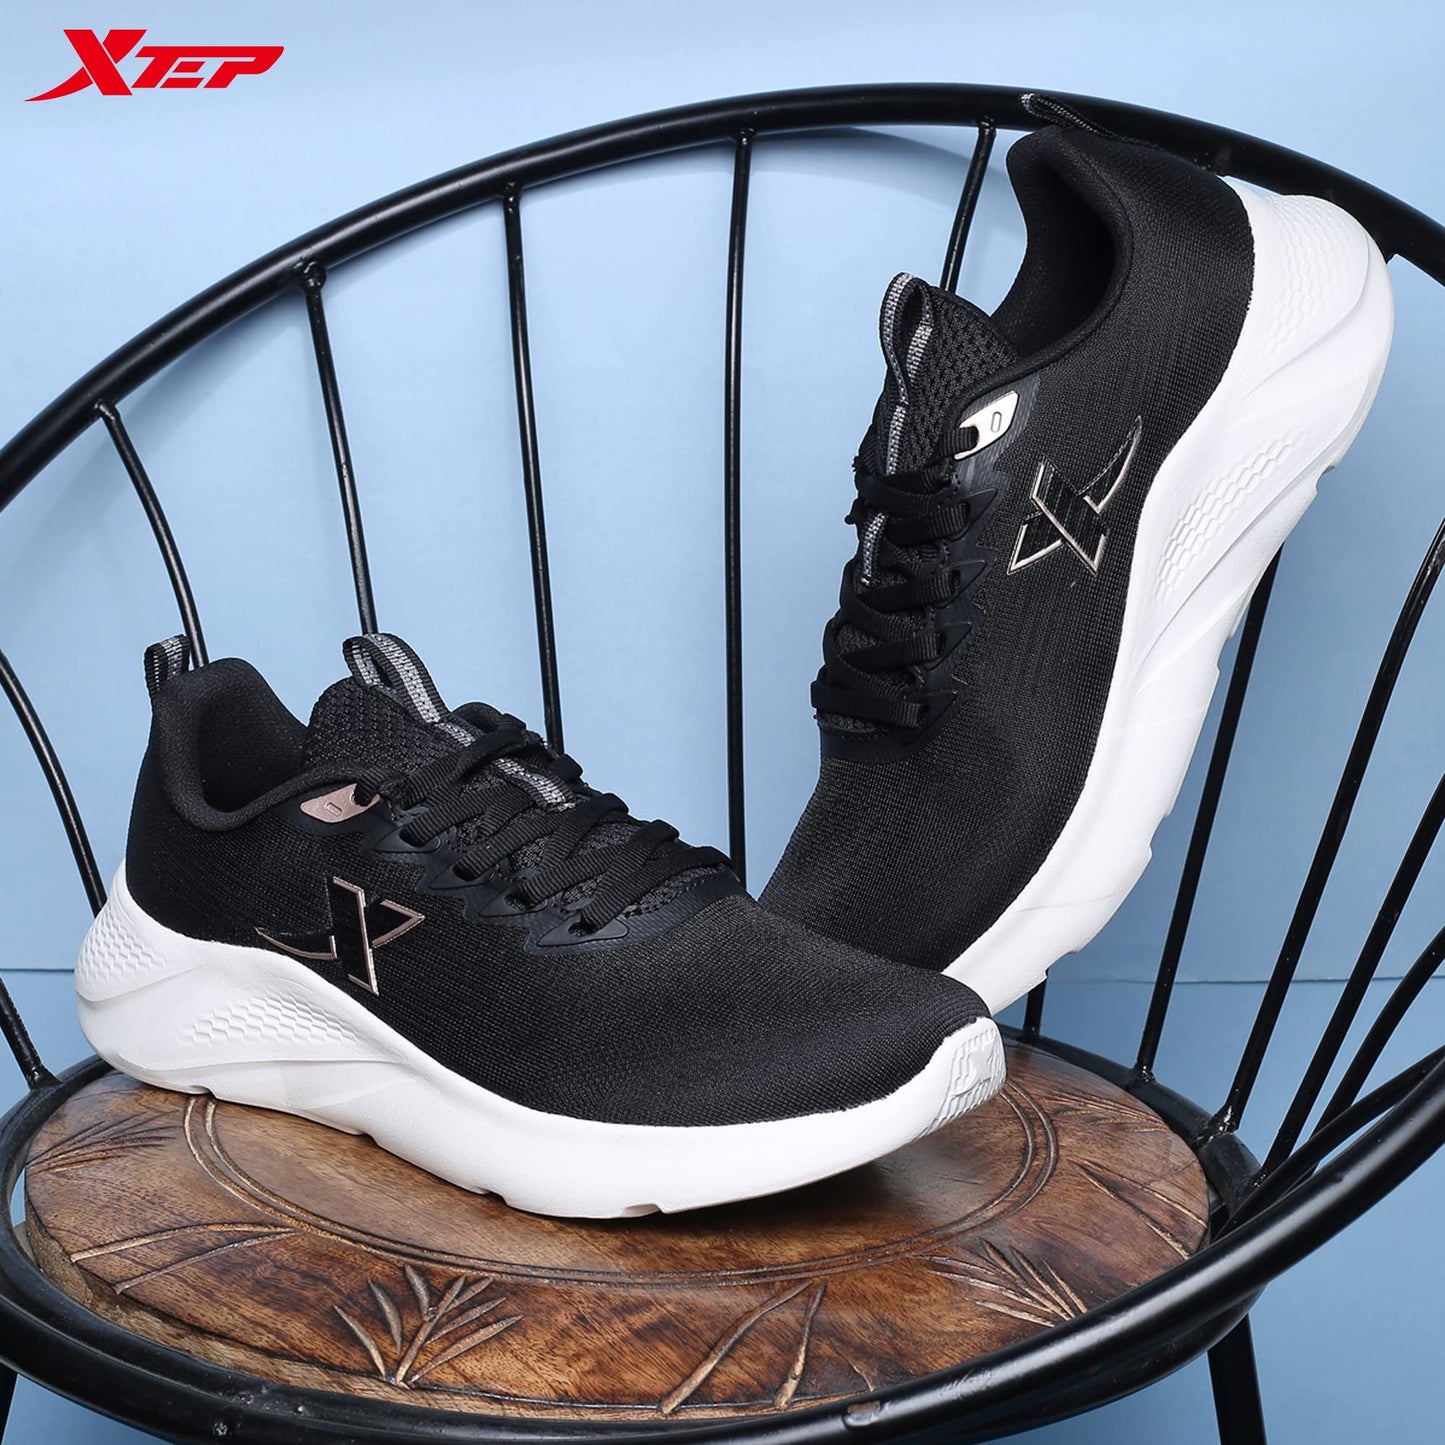 XTEP Women's Black Mesh Upper Lightweight Sports Running Shoes (3.5 UK)